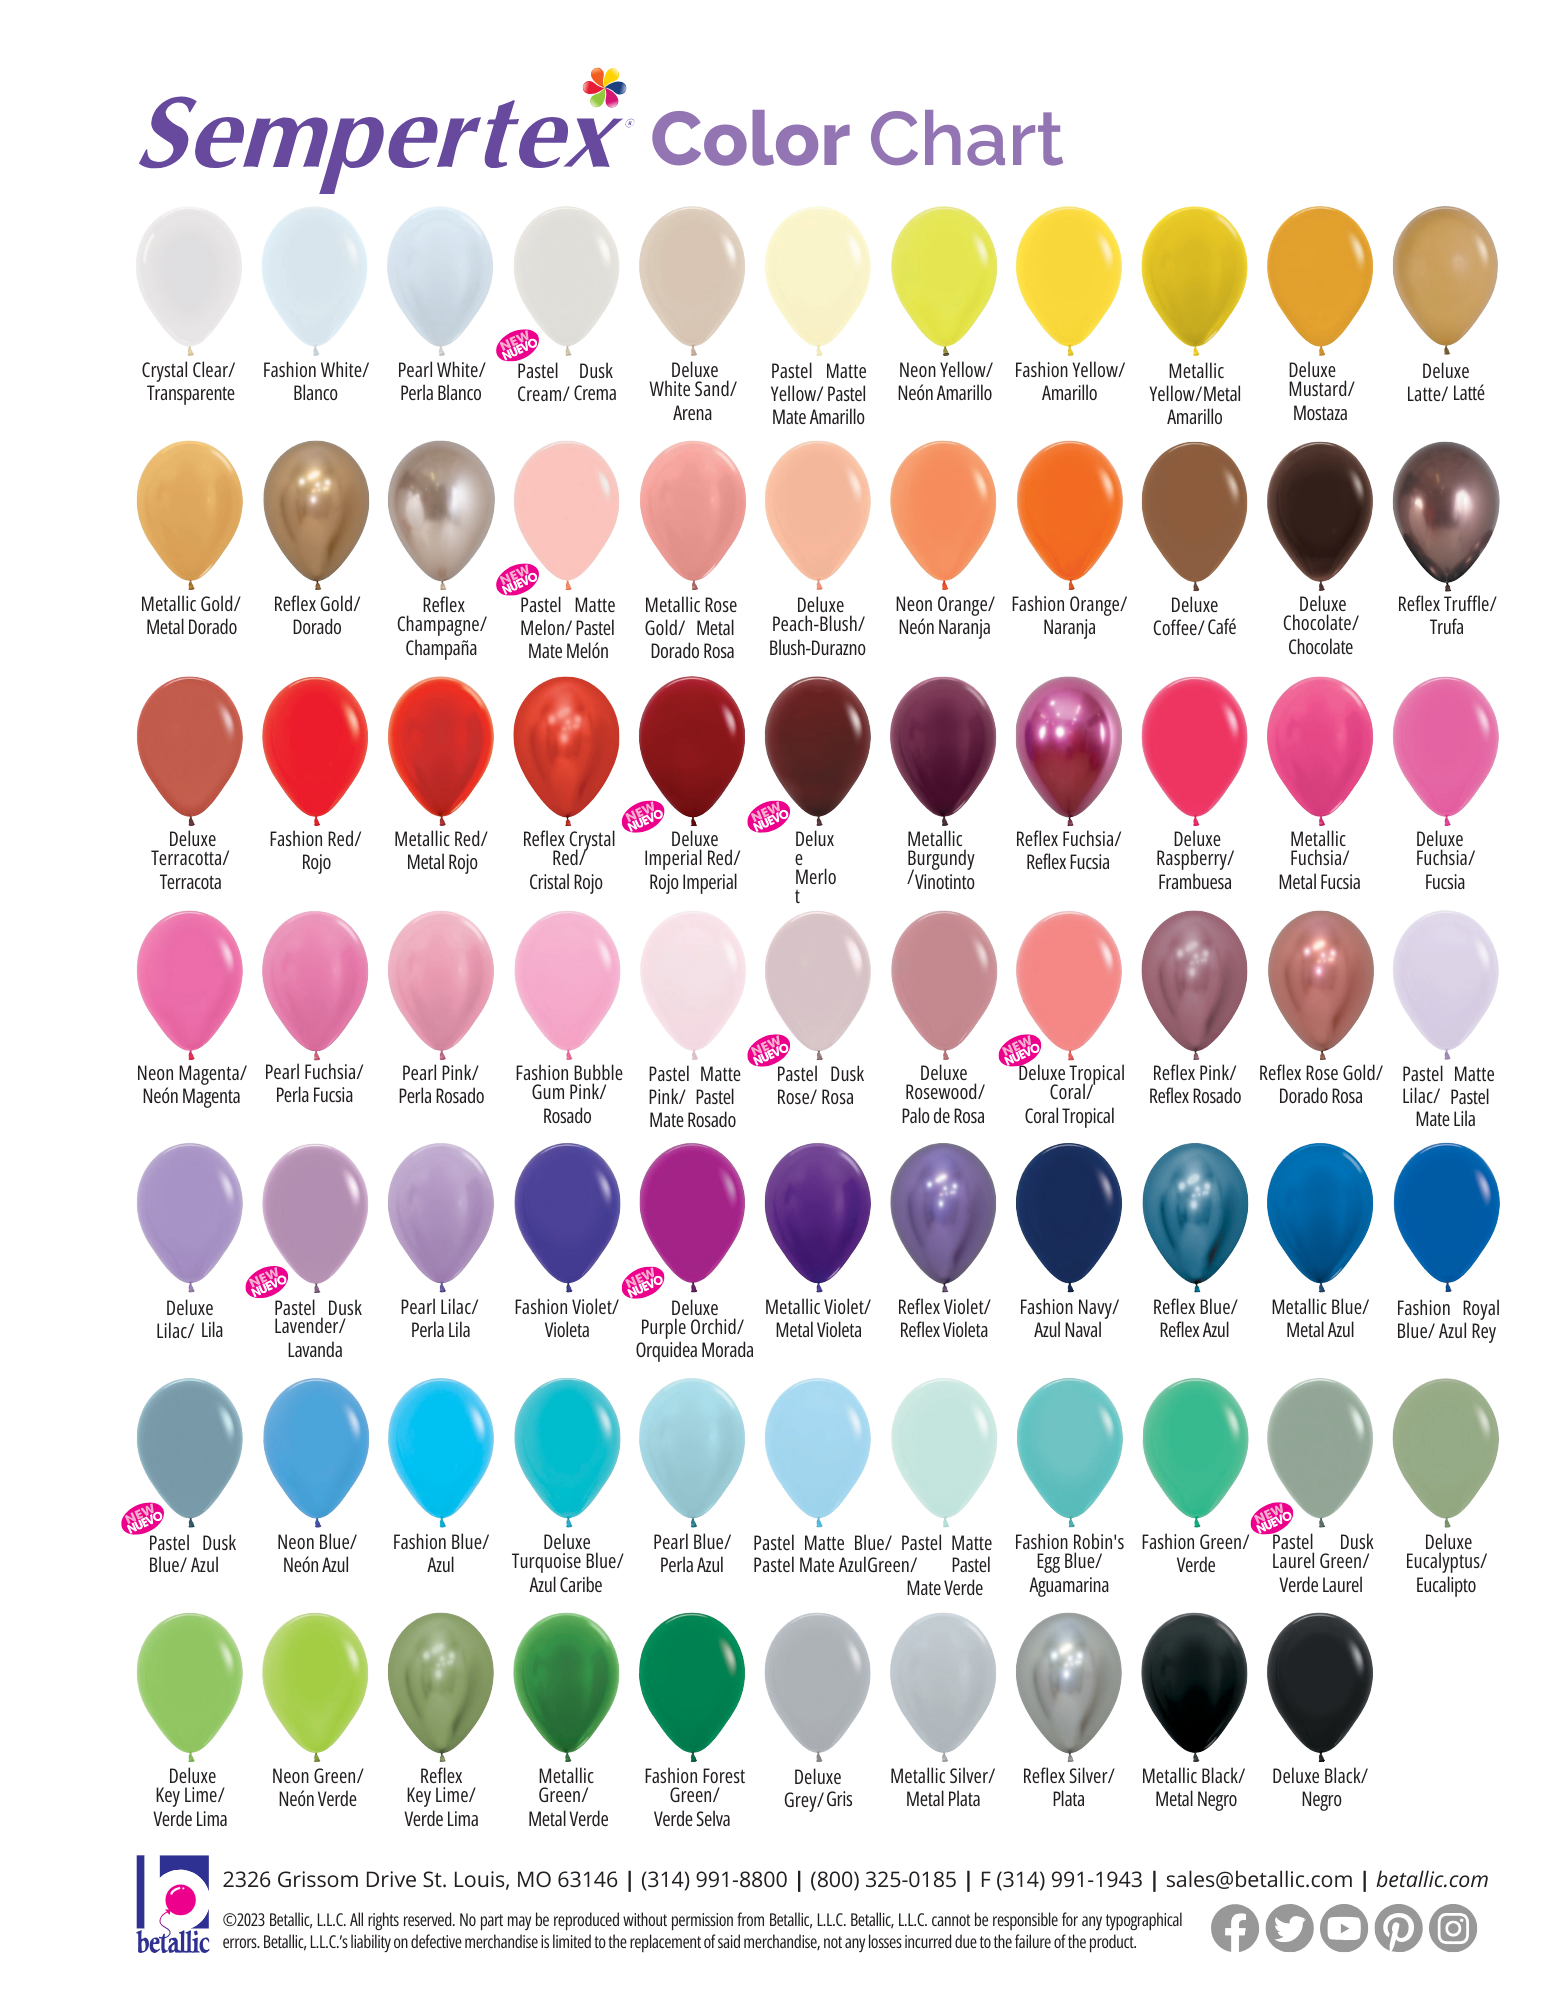 Sempertex Colour Chart, Balloons Sydney